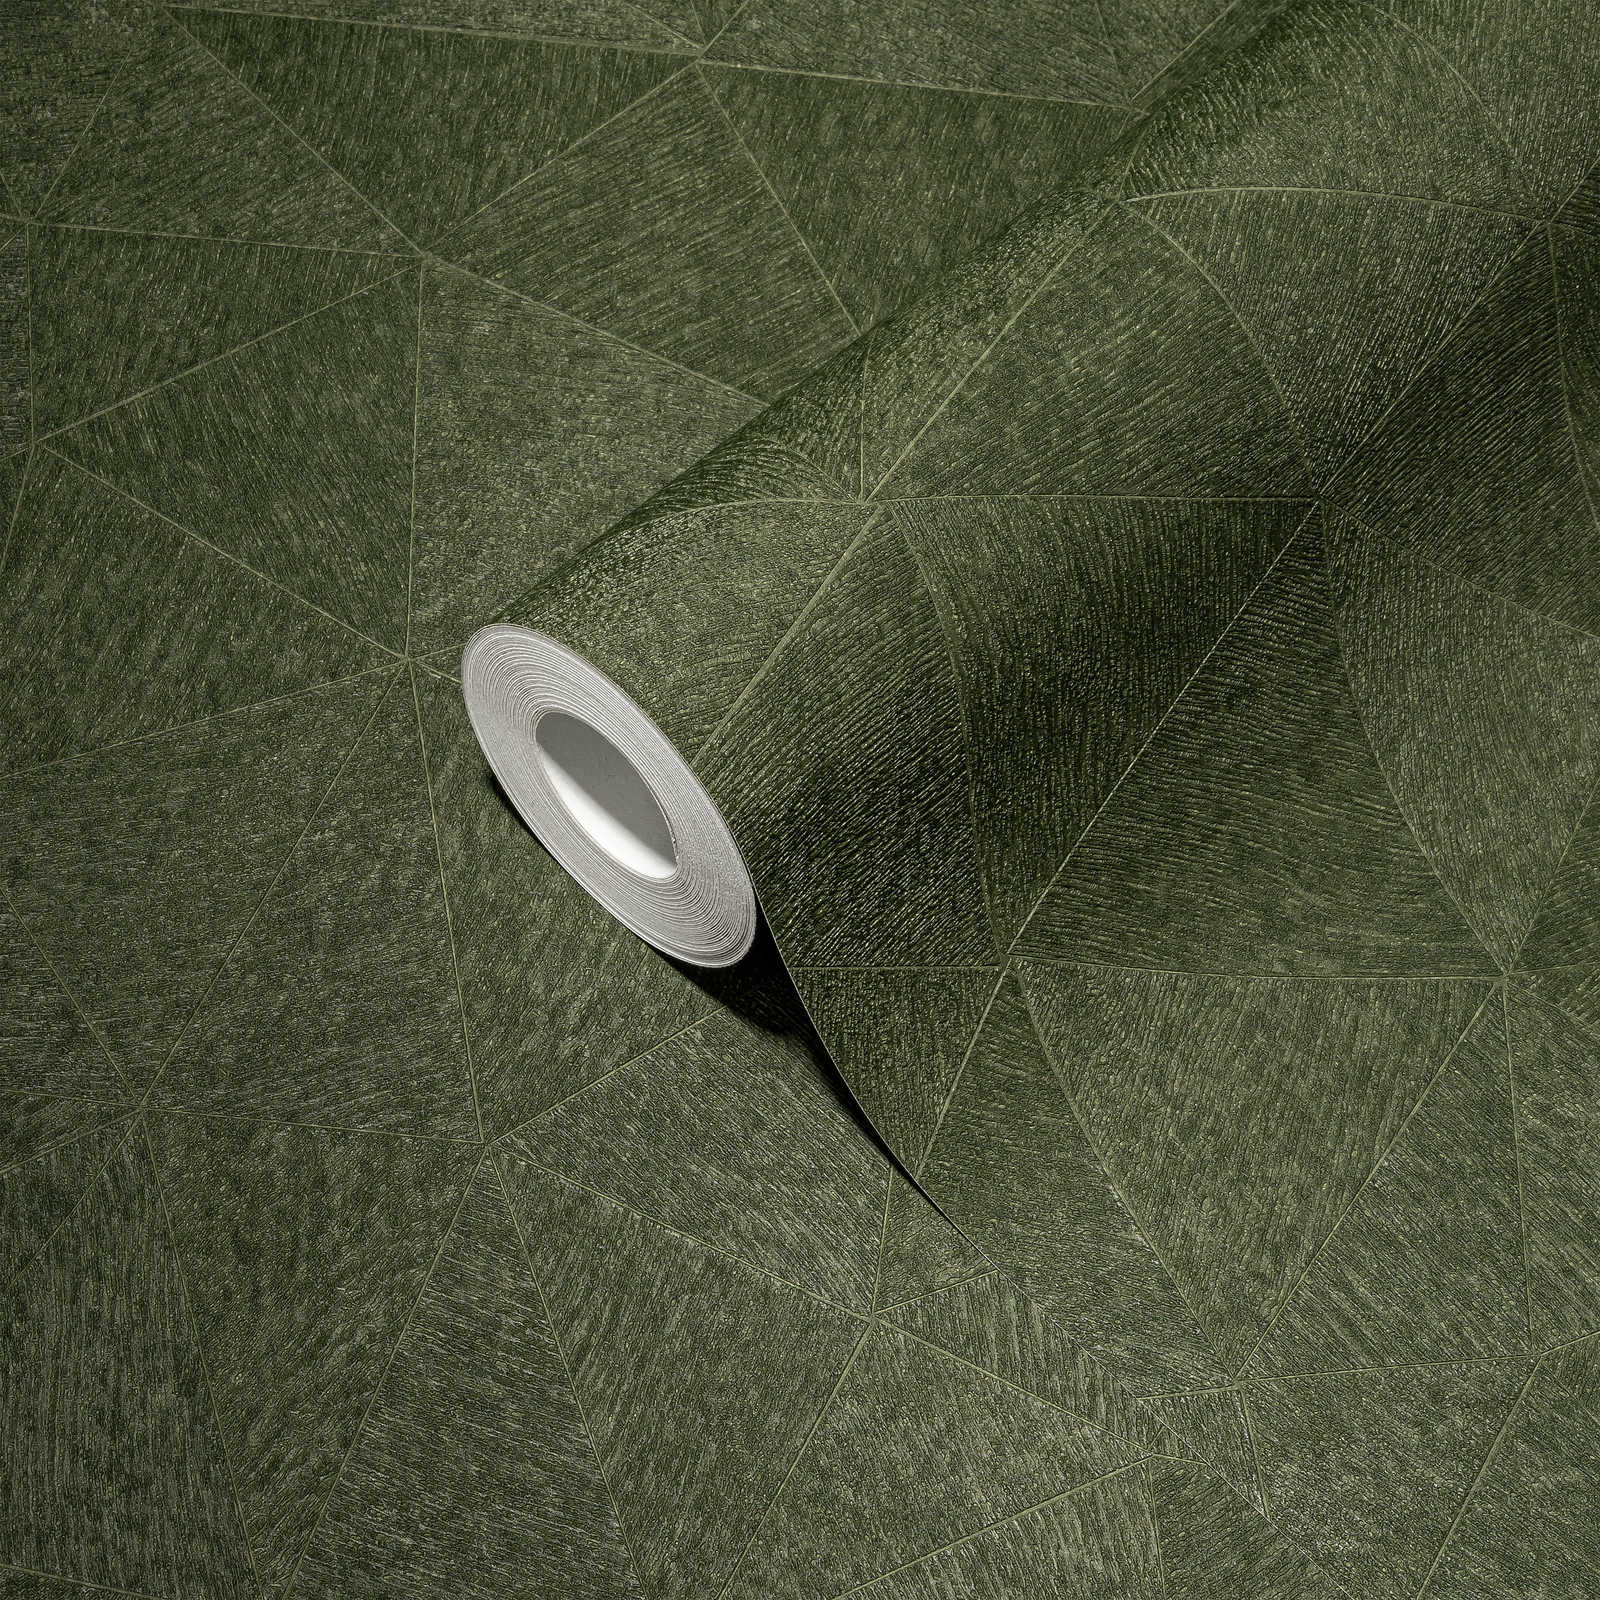             Vliesbehang met subtiel grafisch patroon - groen
        